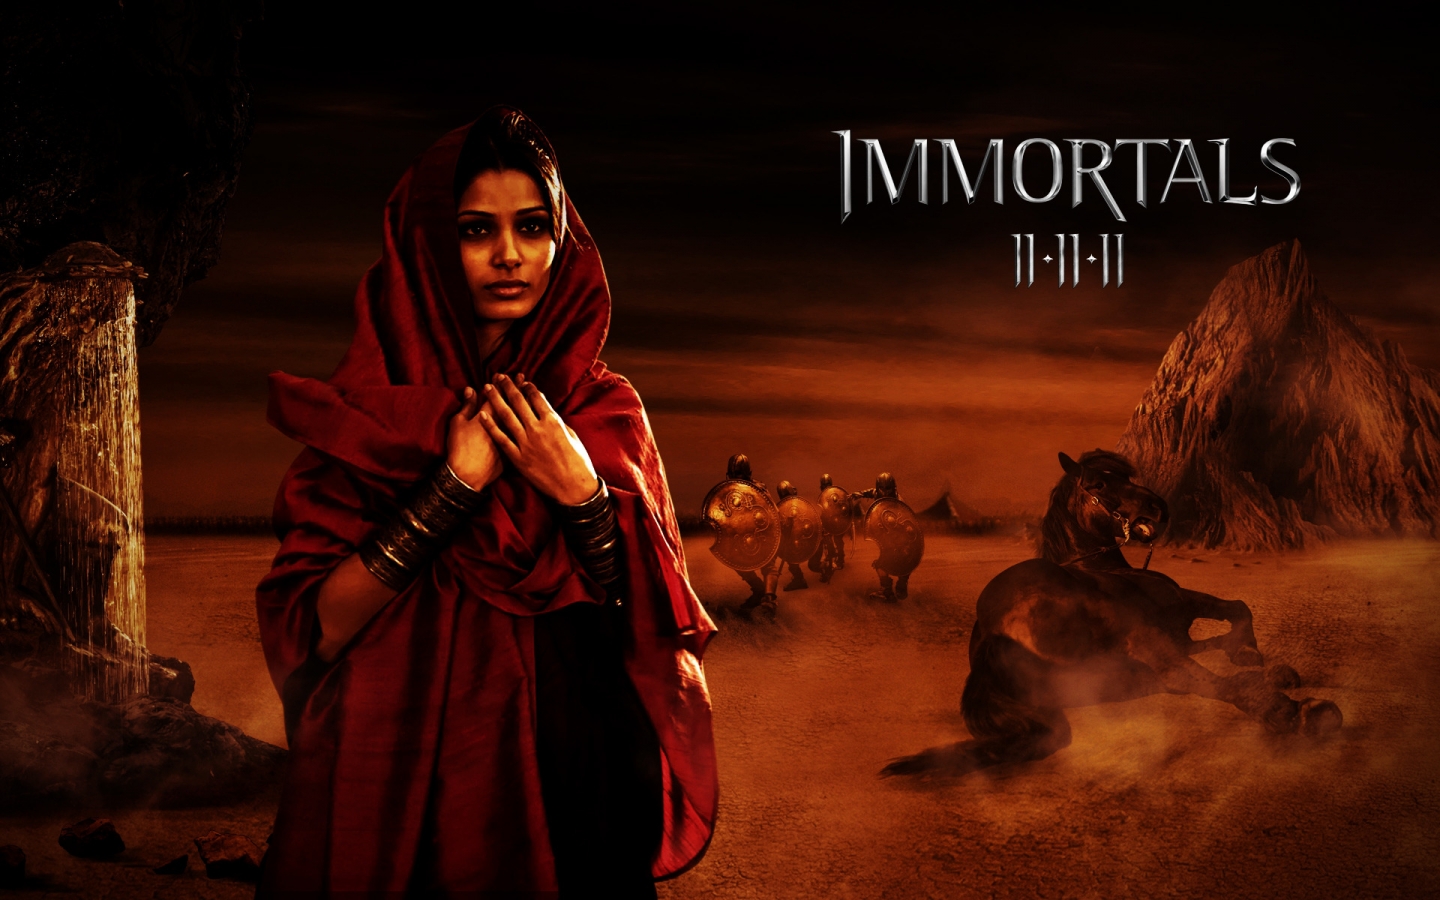 Immortals Movie Scene for 1440 x 900 widescreen resolution